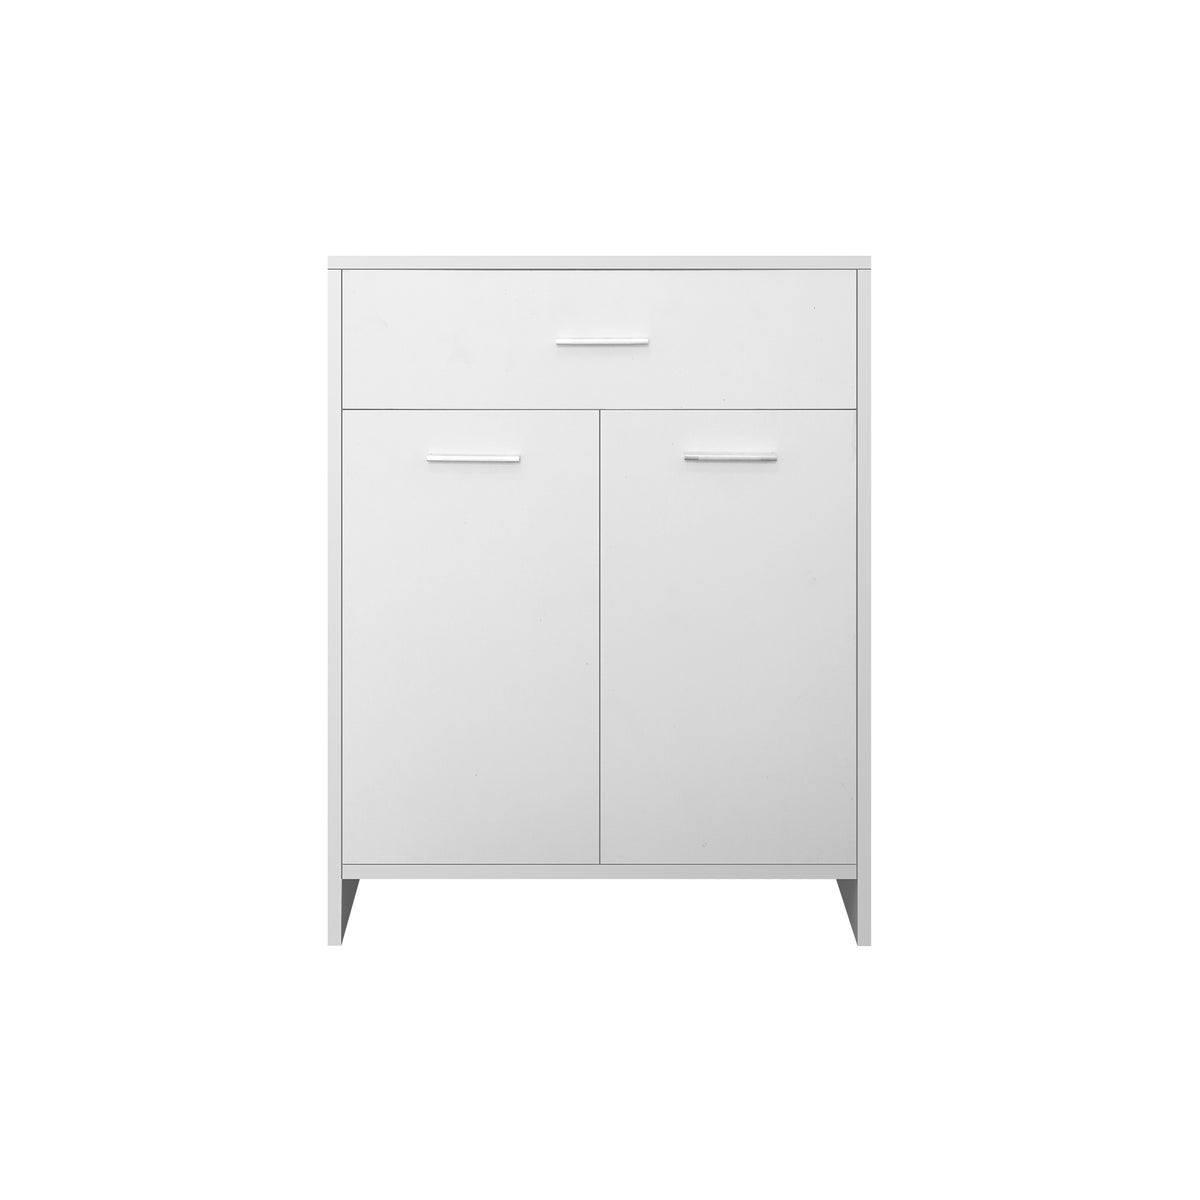 ML-Design Badezimmerschrank Weiß, 60 x 80 x 33 cm, Badschrank mit 1 Schublade und 2 Türen, viel Stauraum, Badkommode aus MDF-Holz, Kommode für Badezimmer, Küchenschrank Aufbewahrungsschrank Badmöbel